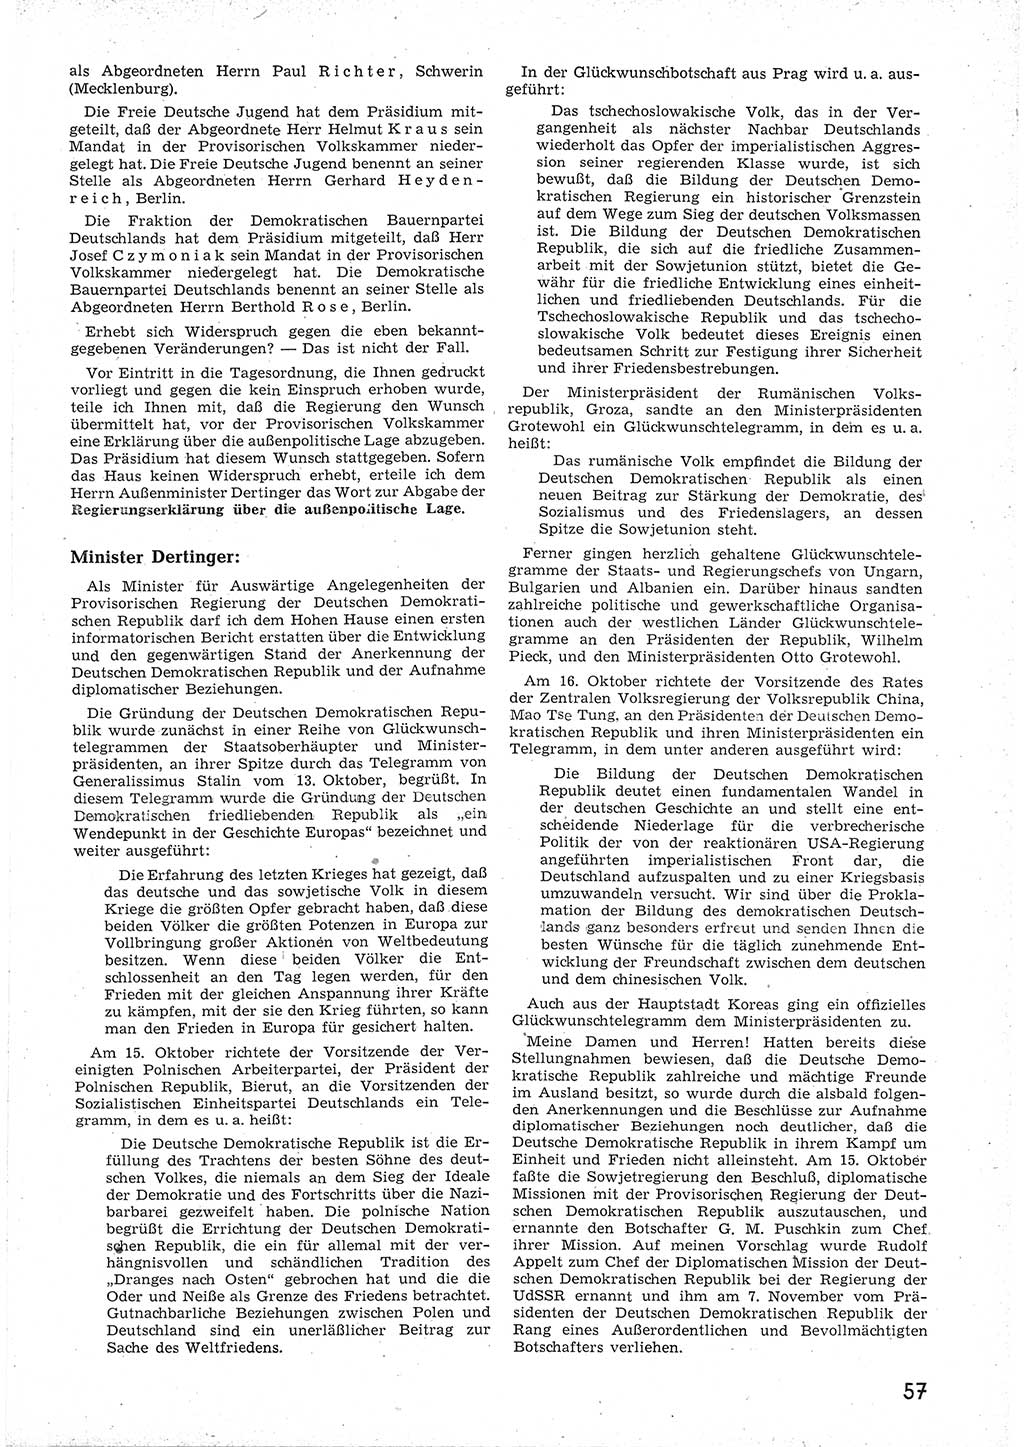 Provisorische Volkskammer (VK) der Deutschen Demokratischen Republik (DDR) 1949-1950, Dokument 69 (Prov. VK DDR 1949-1950, Dok. 69)